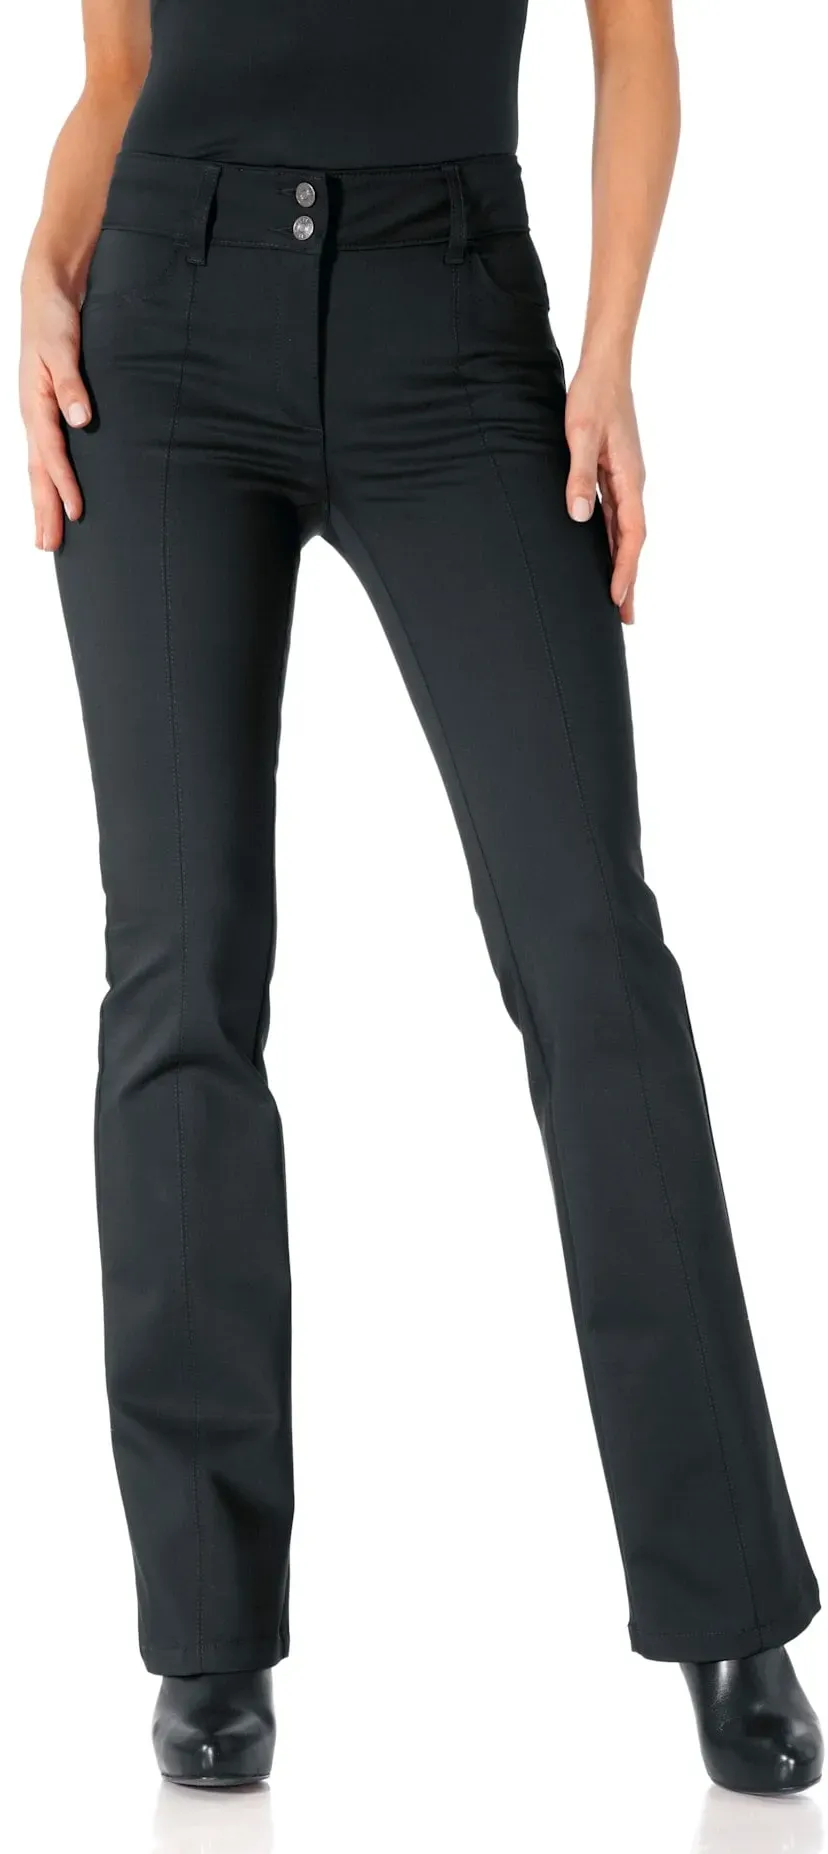 Bootcuthose HEINE Gr. 21, Kurzgrößen, schwarz Damen Hosen Ausgestellte